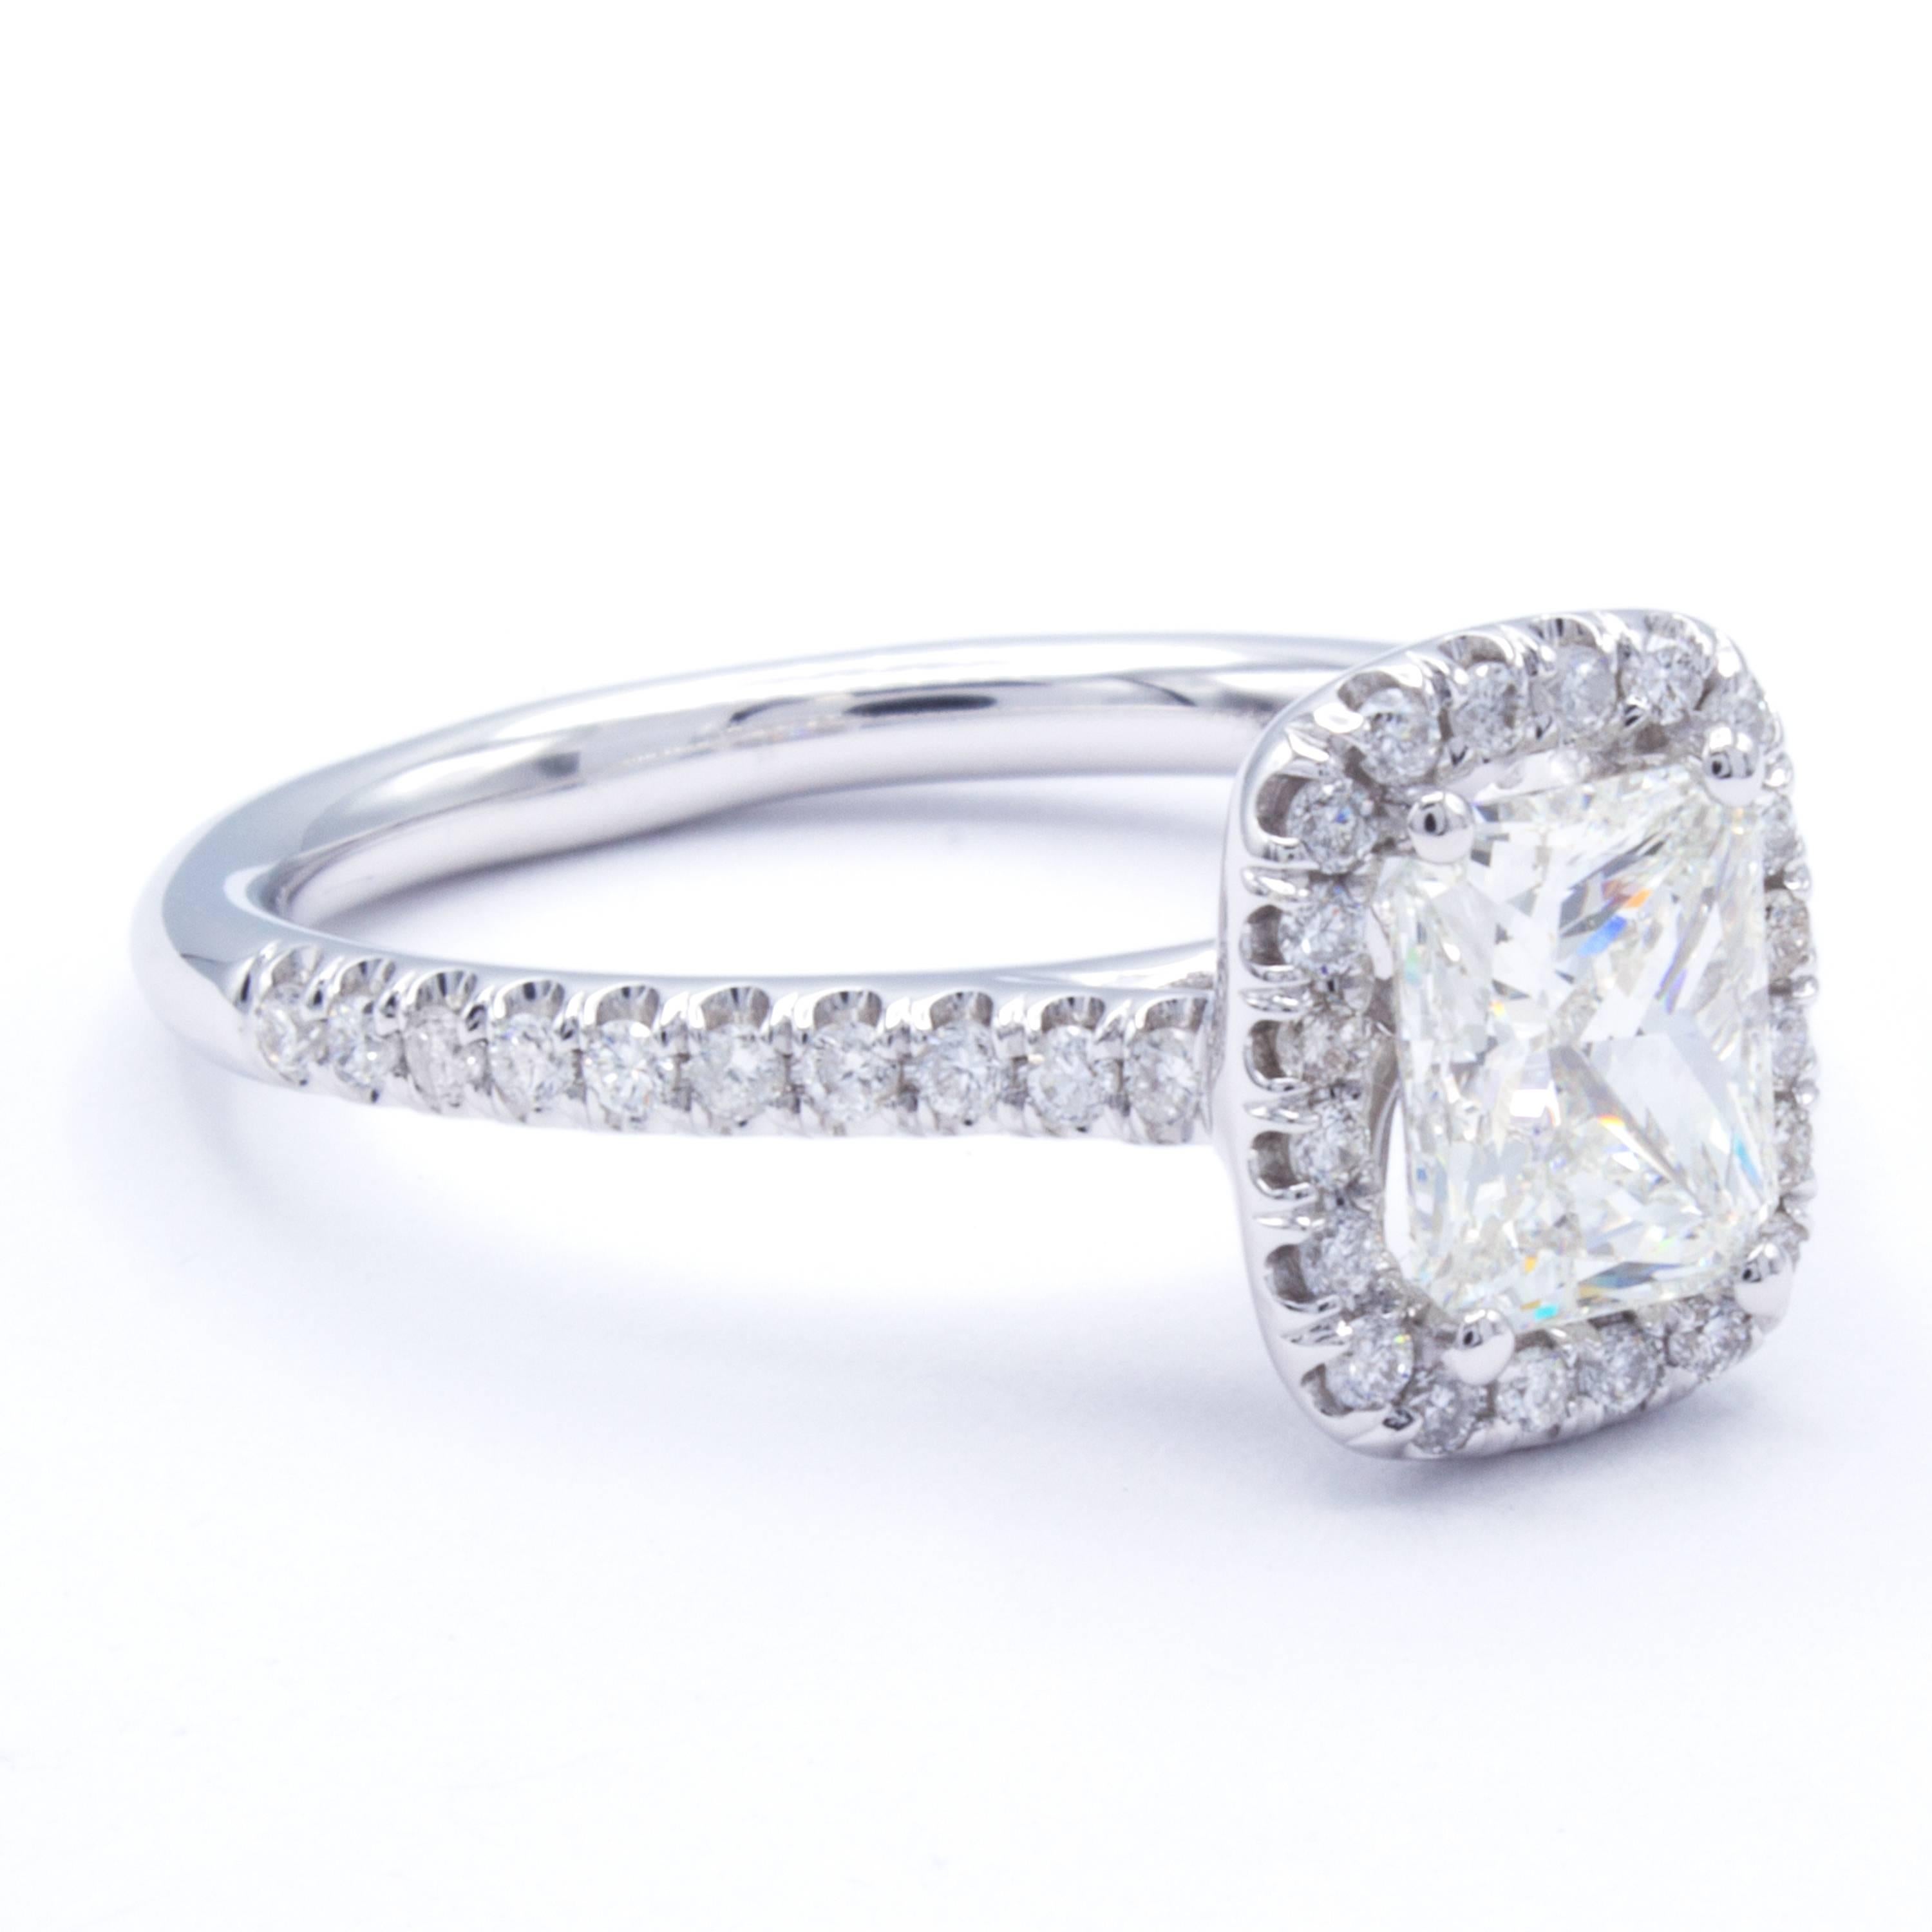 David Rosenberg 1.02 Carat Radiant I/SI2 GIA Certified Diamond Engagement Ring 1